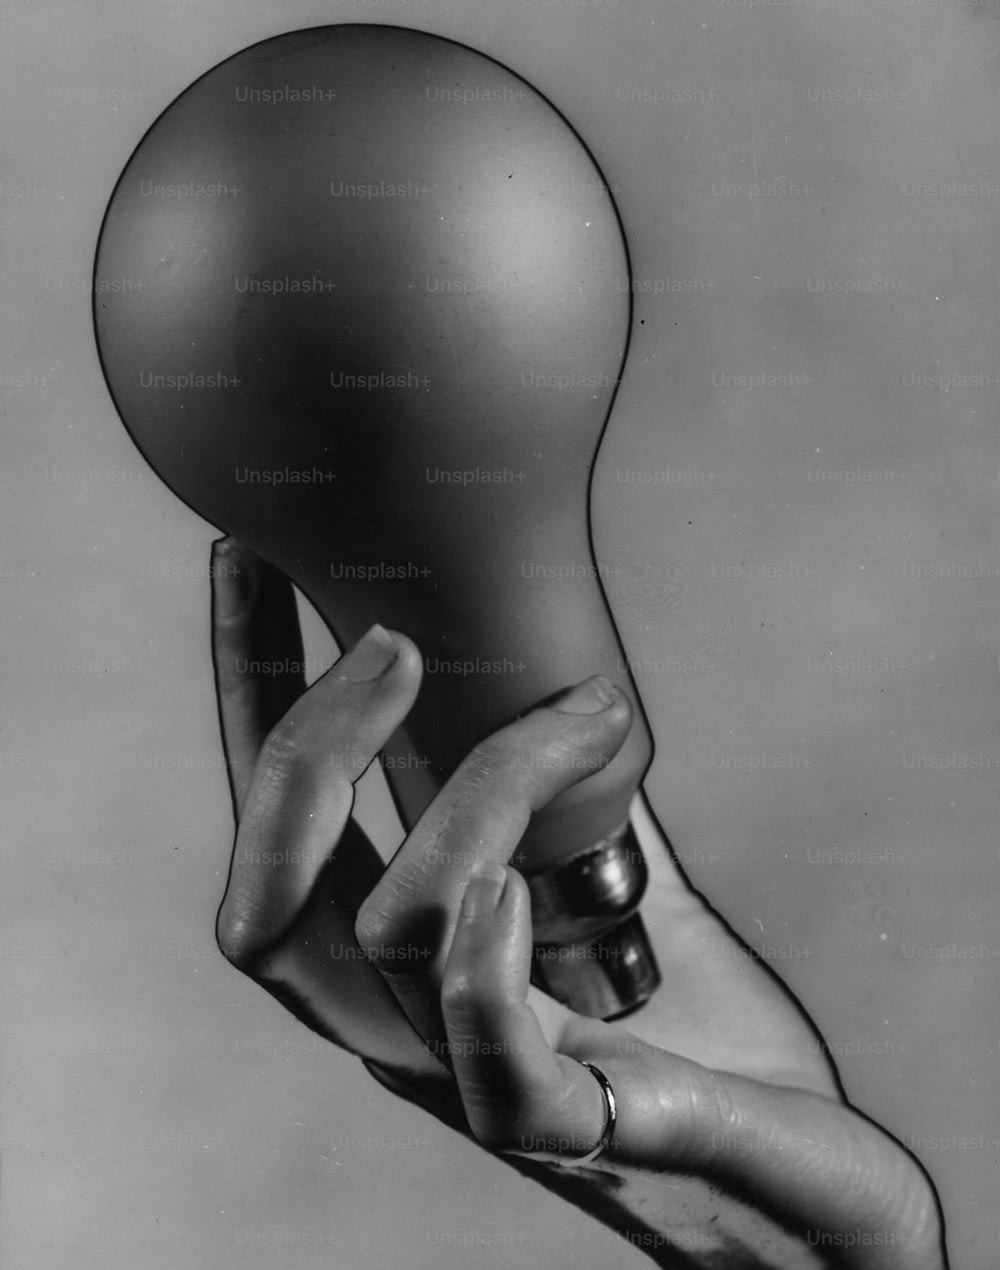 vers 1936 : Une seule main avec une bague à l’auriculaire, tenant une grosse ampoule électrique.  Image solarisée.  (Photo de Chaloner Woods/Getty Images)